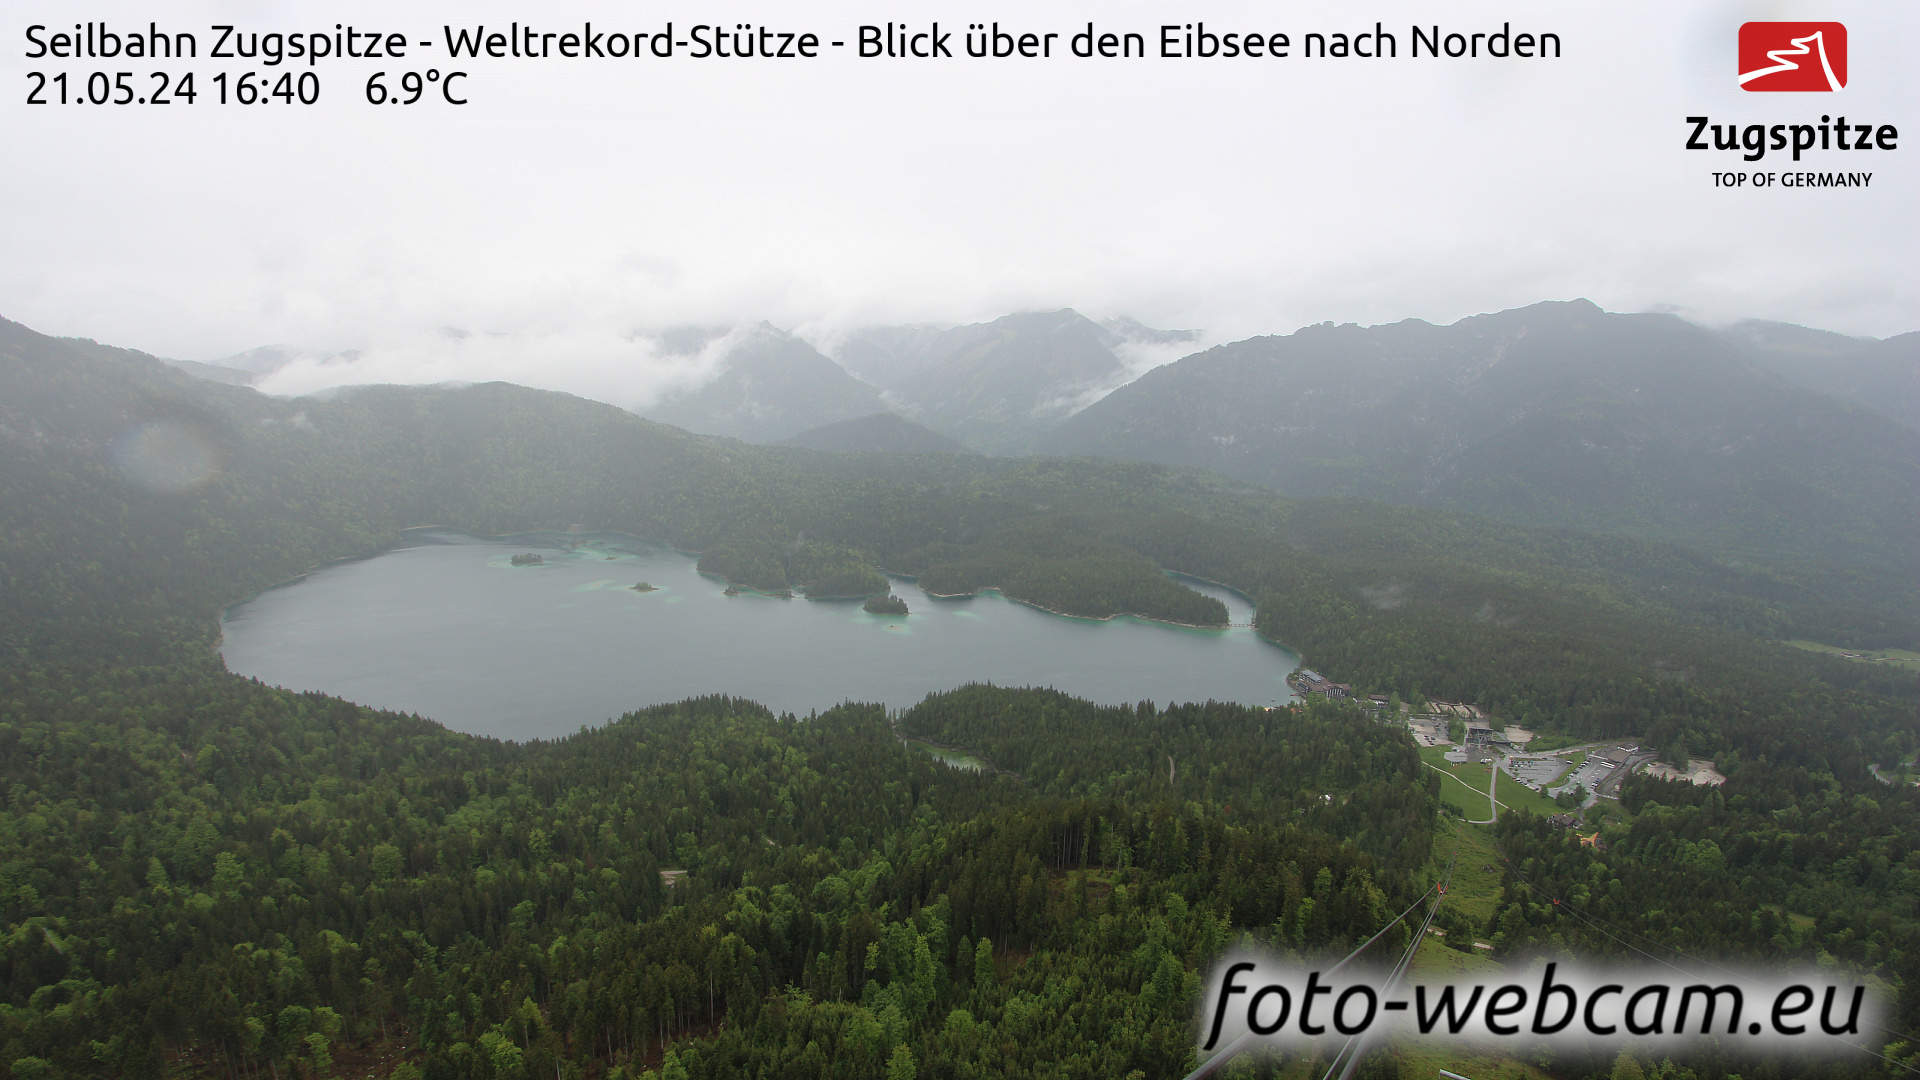 Zugspitze Wed. 16:49